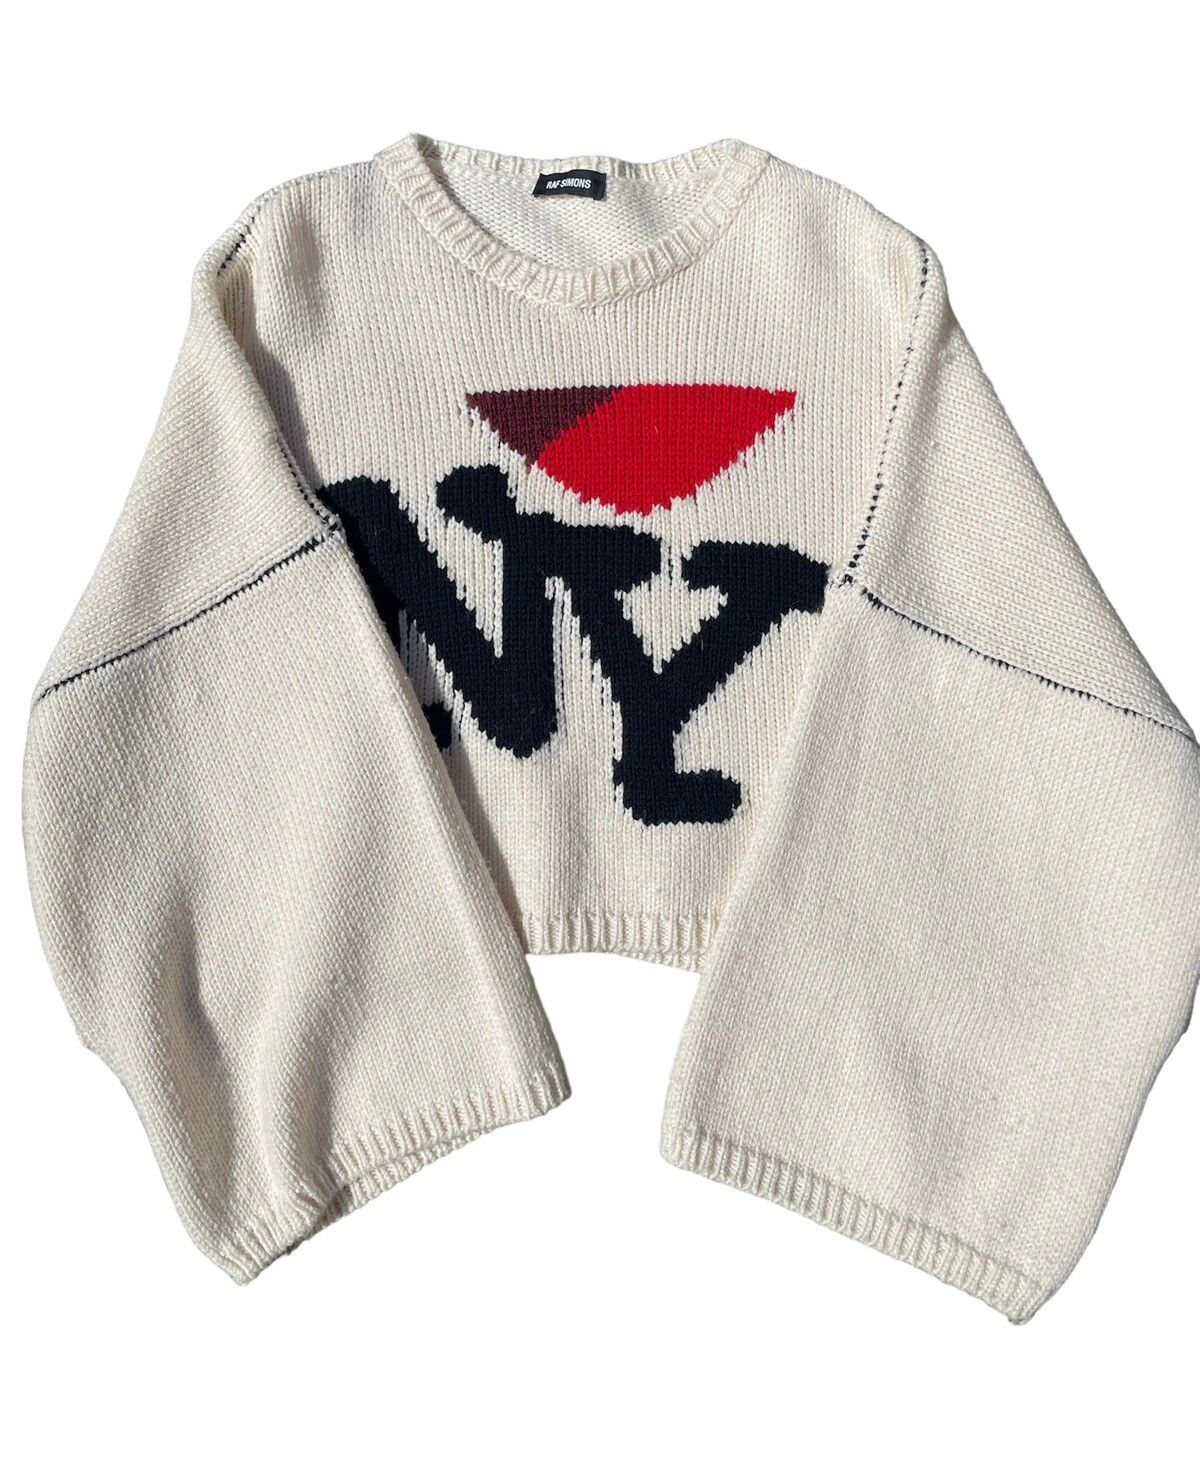 Raf Simons FW17 I love NY Knit sweater | Grailed